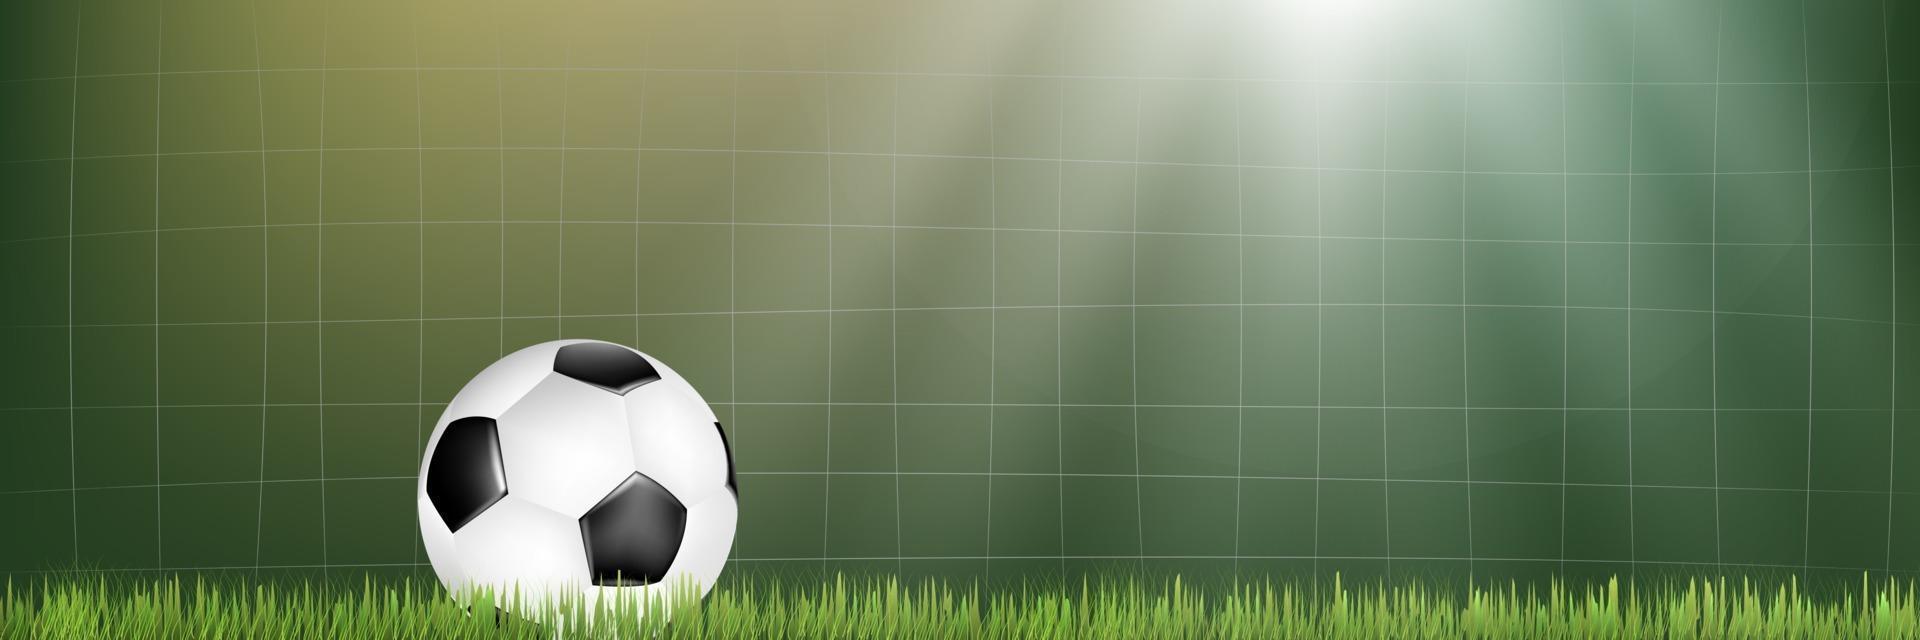 fotbollsnät och boll på fotbollsplanen vektor